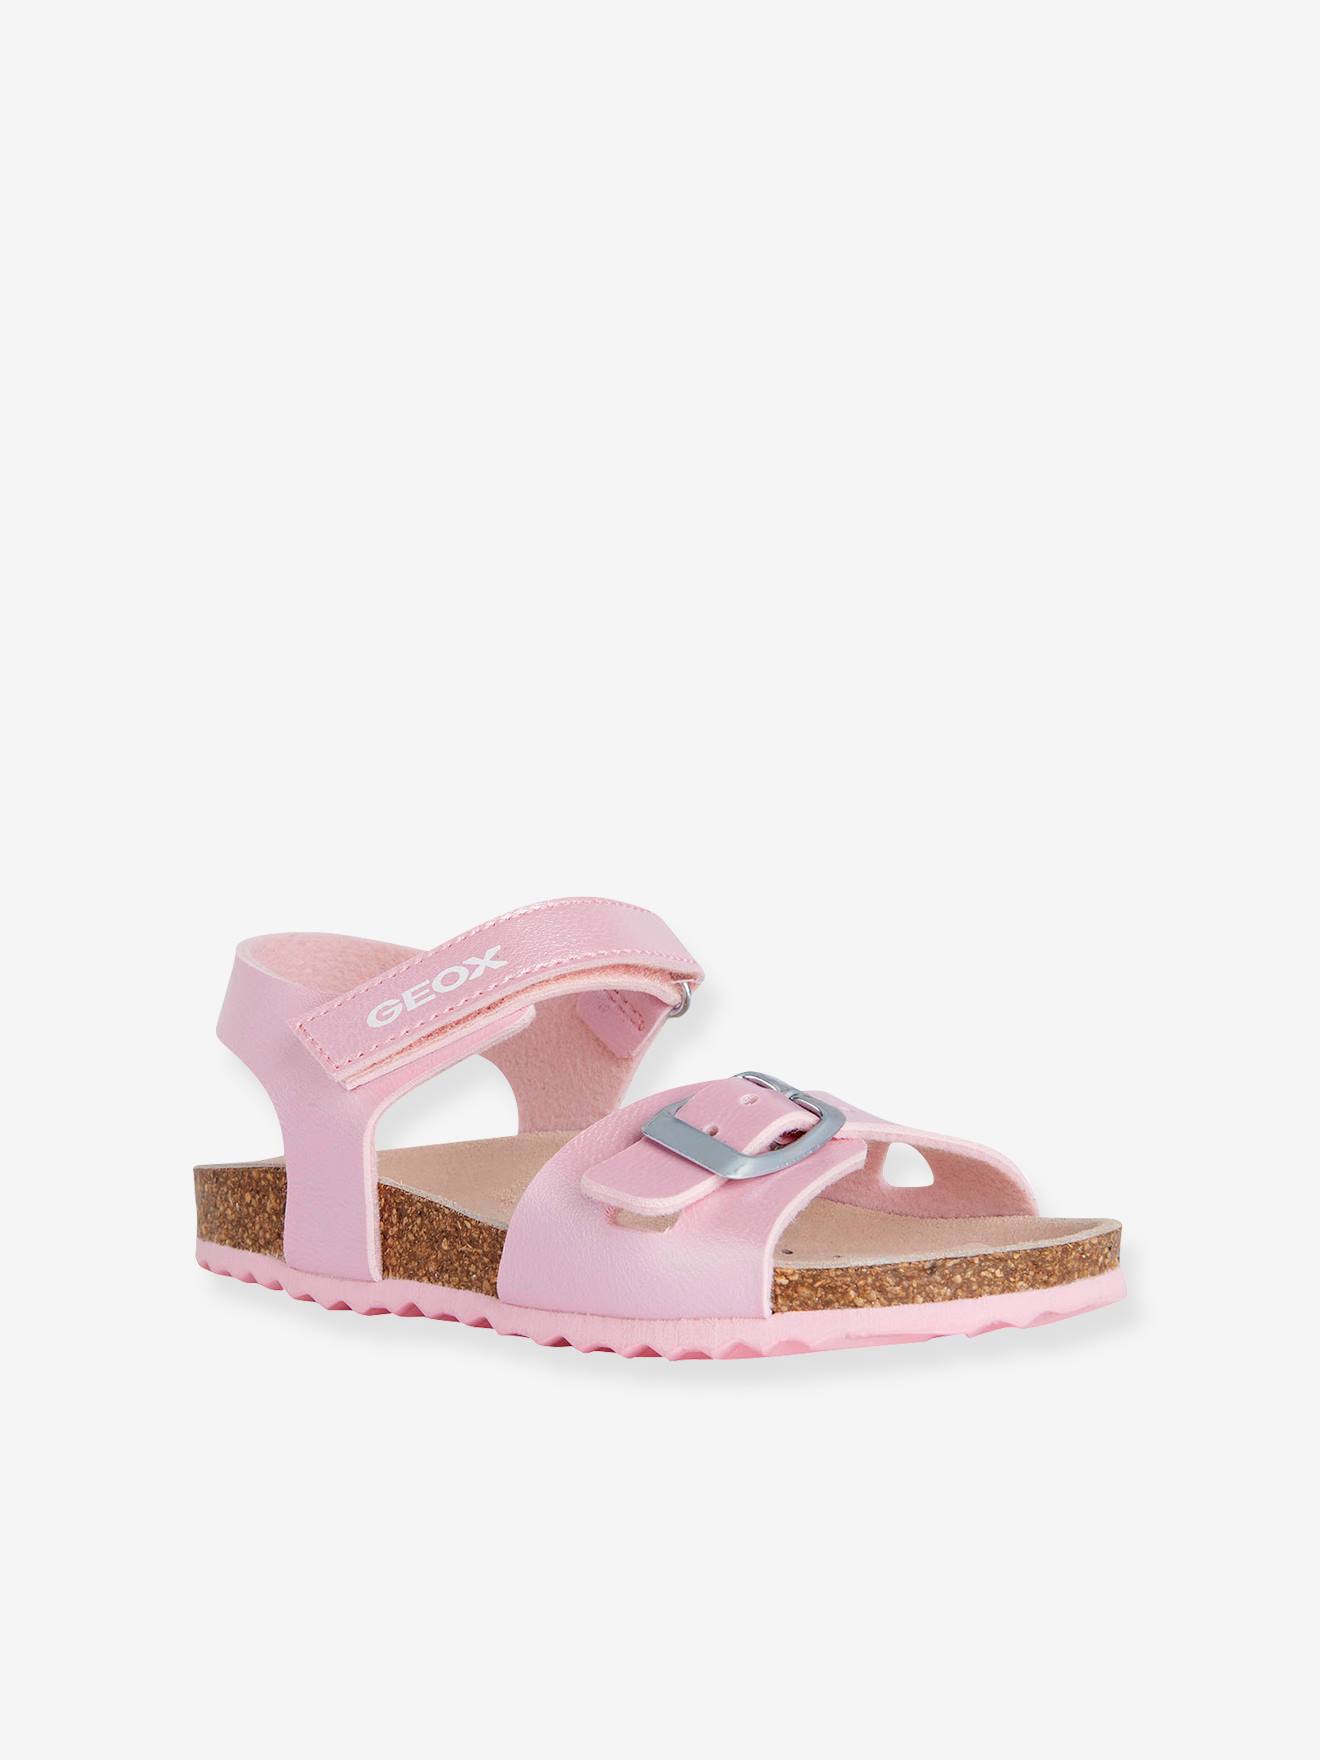 gancho Pólvora Cuidar Sandals for Girls, J. Adriel G.C by GEOX® - pink medium solid, Shoes